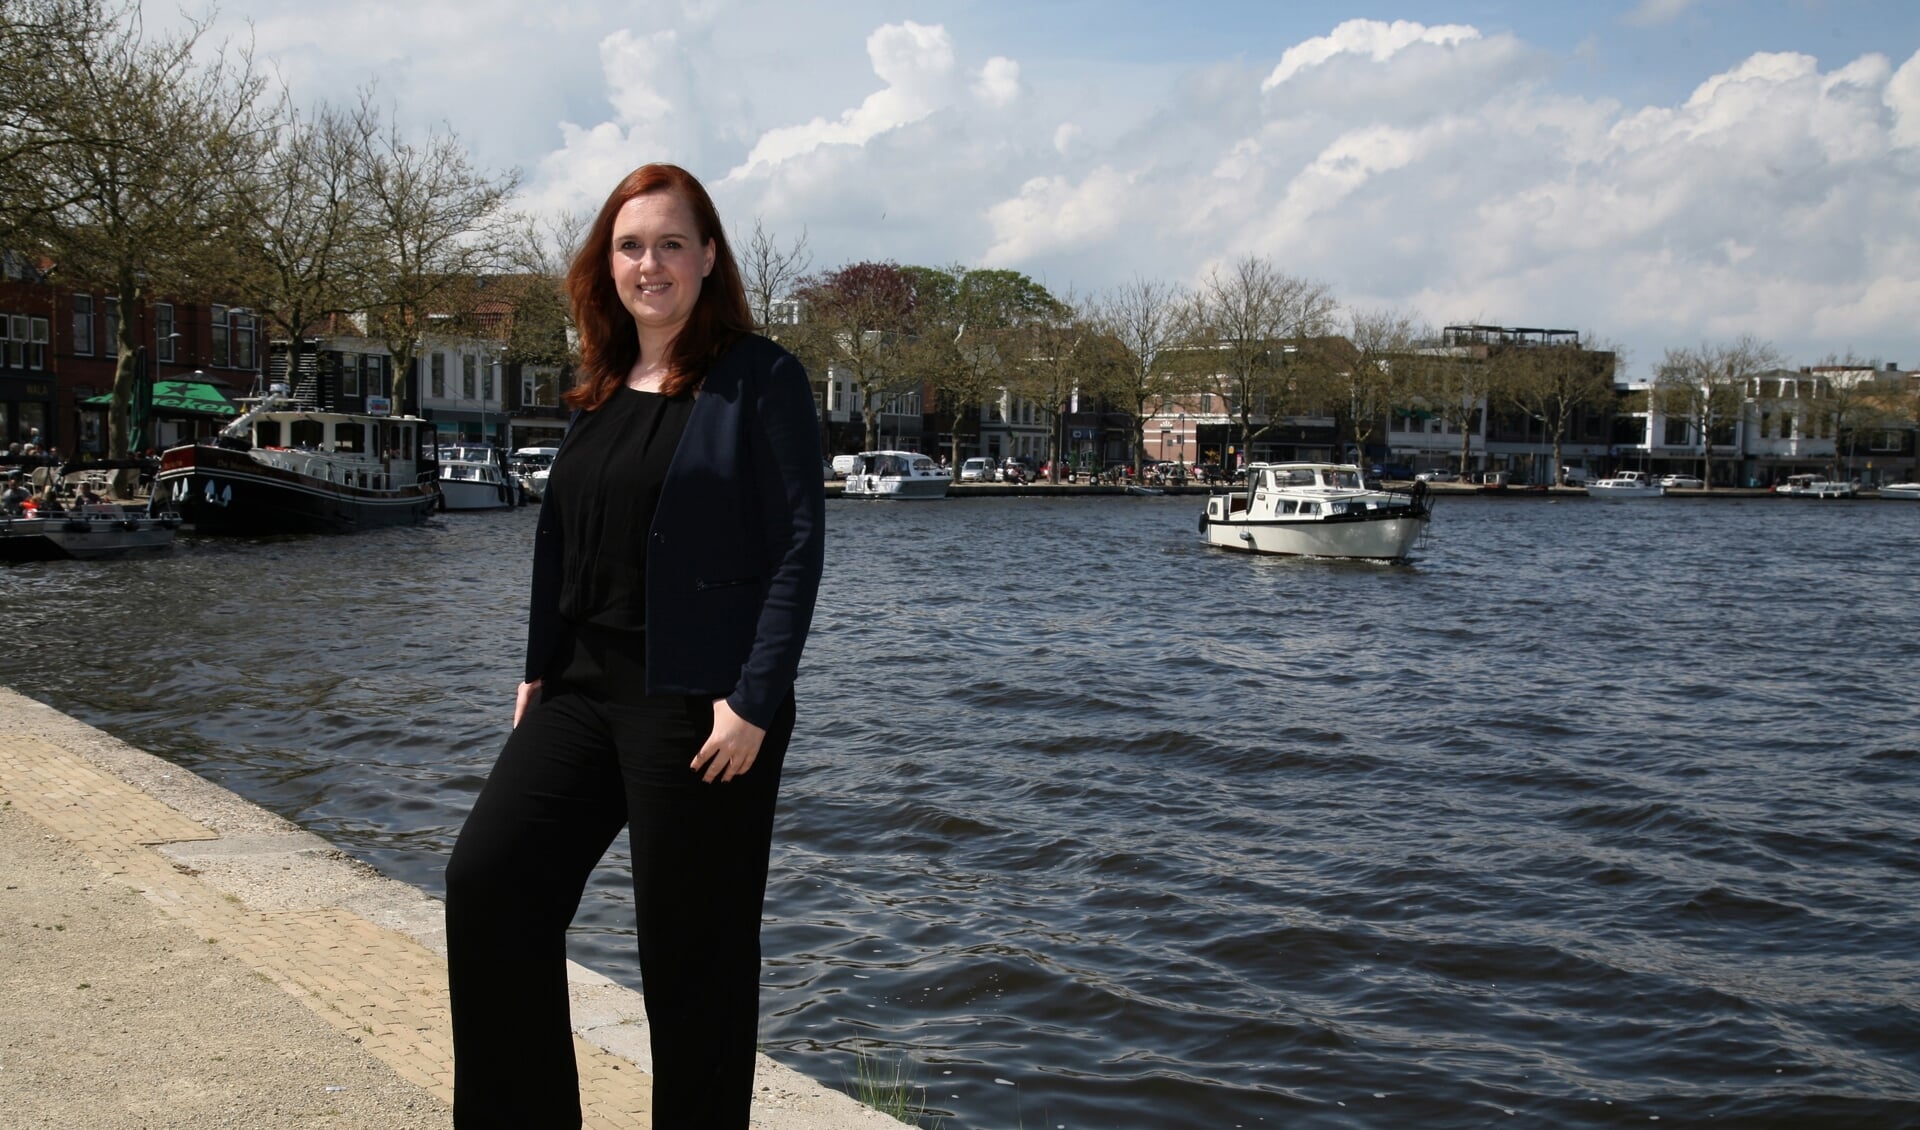 Stephanie Onclin wil zich graag inzetten om ons lieve leven in Zaanstad te behouden én verbeteren. Maar daarvoor moet ze wel de wensen weten die er leven in de stad en dorpen van Zaanstad.